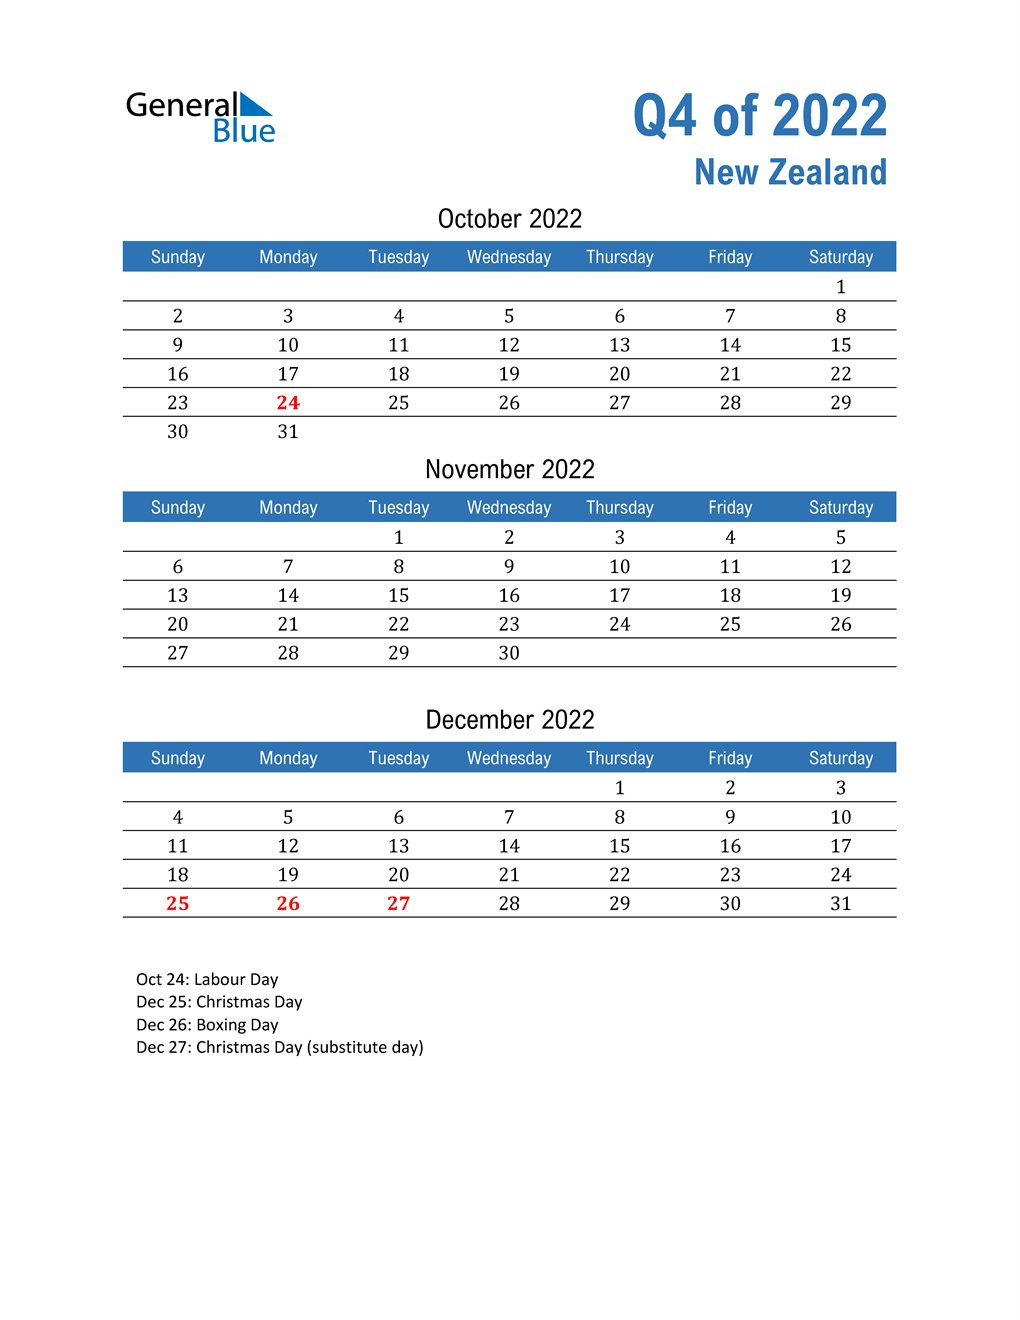 Q4 2022 Quarterly Calendar For New Zealand